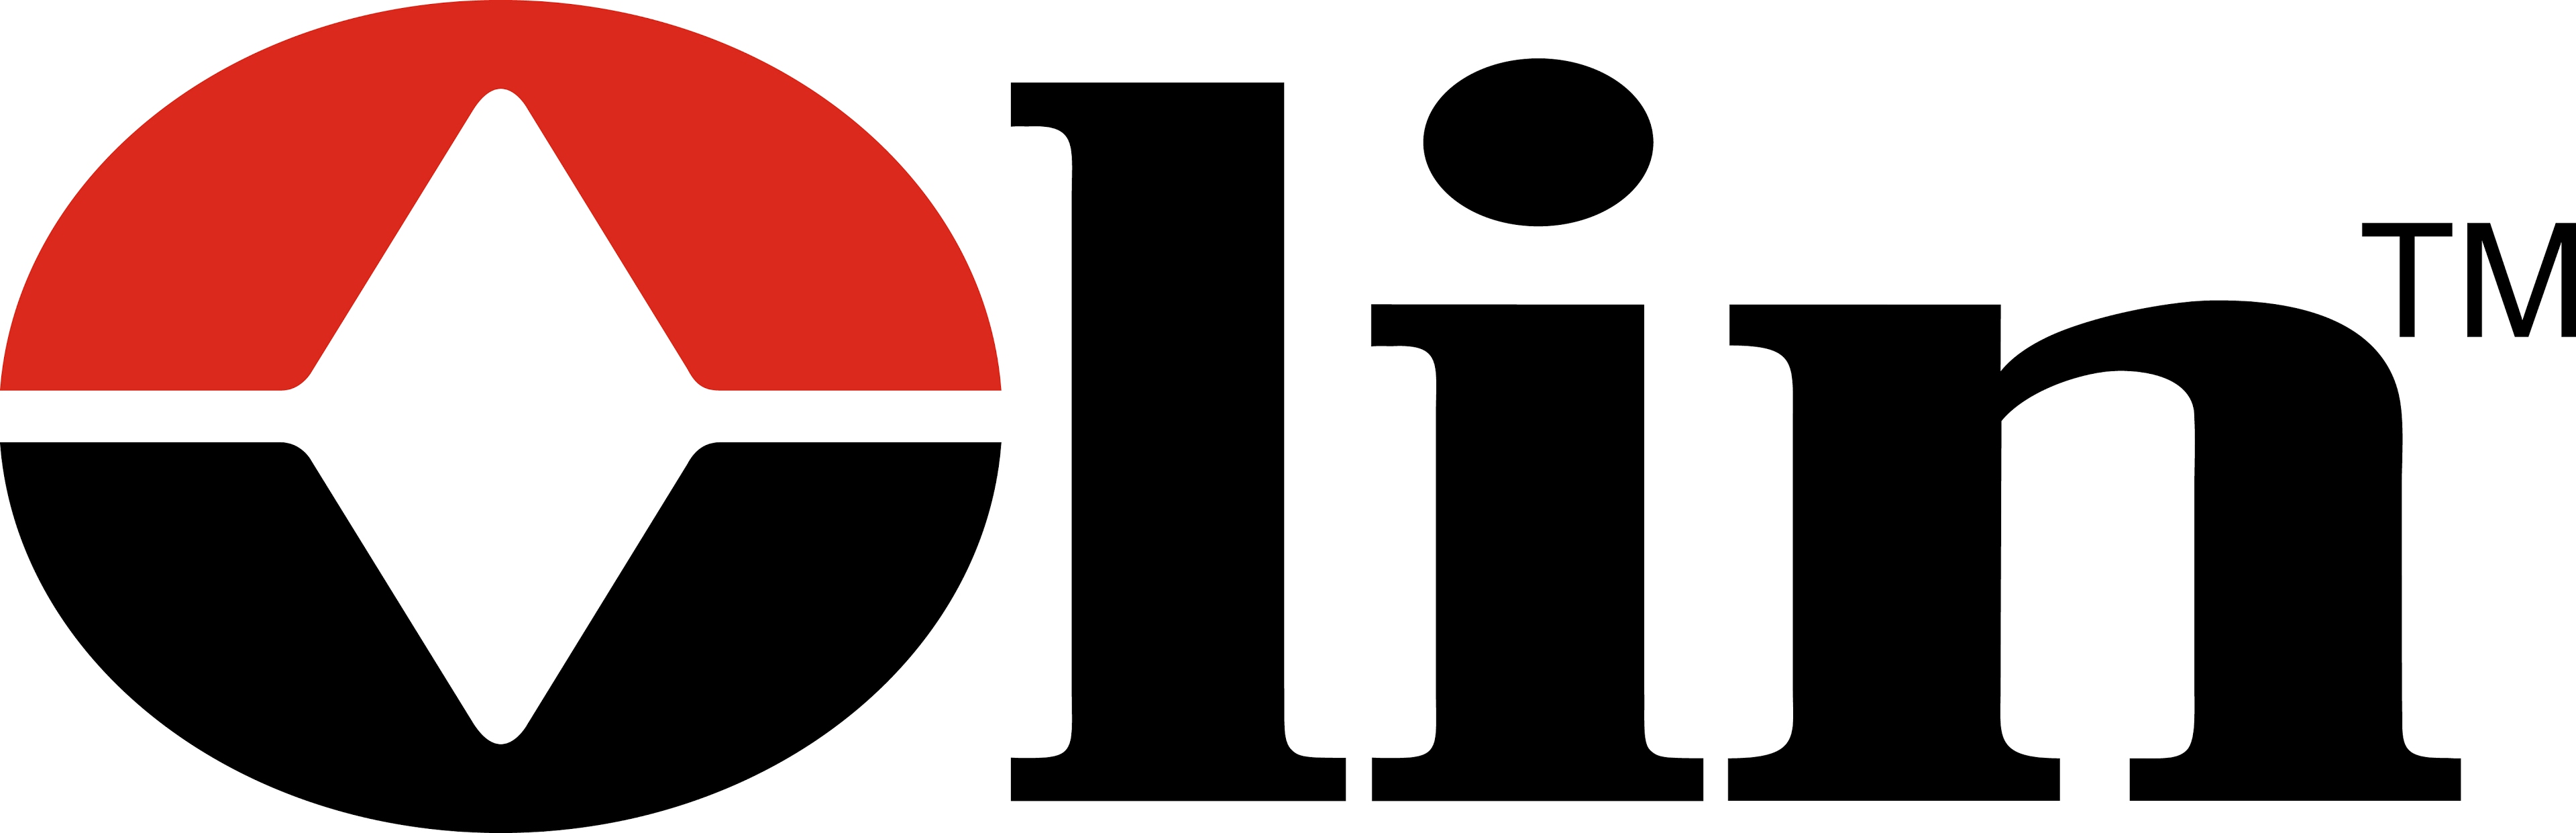 oln-logo022420.jpg